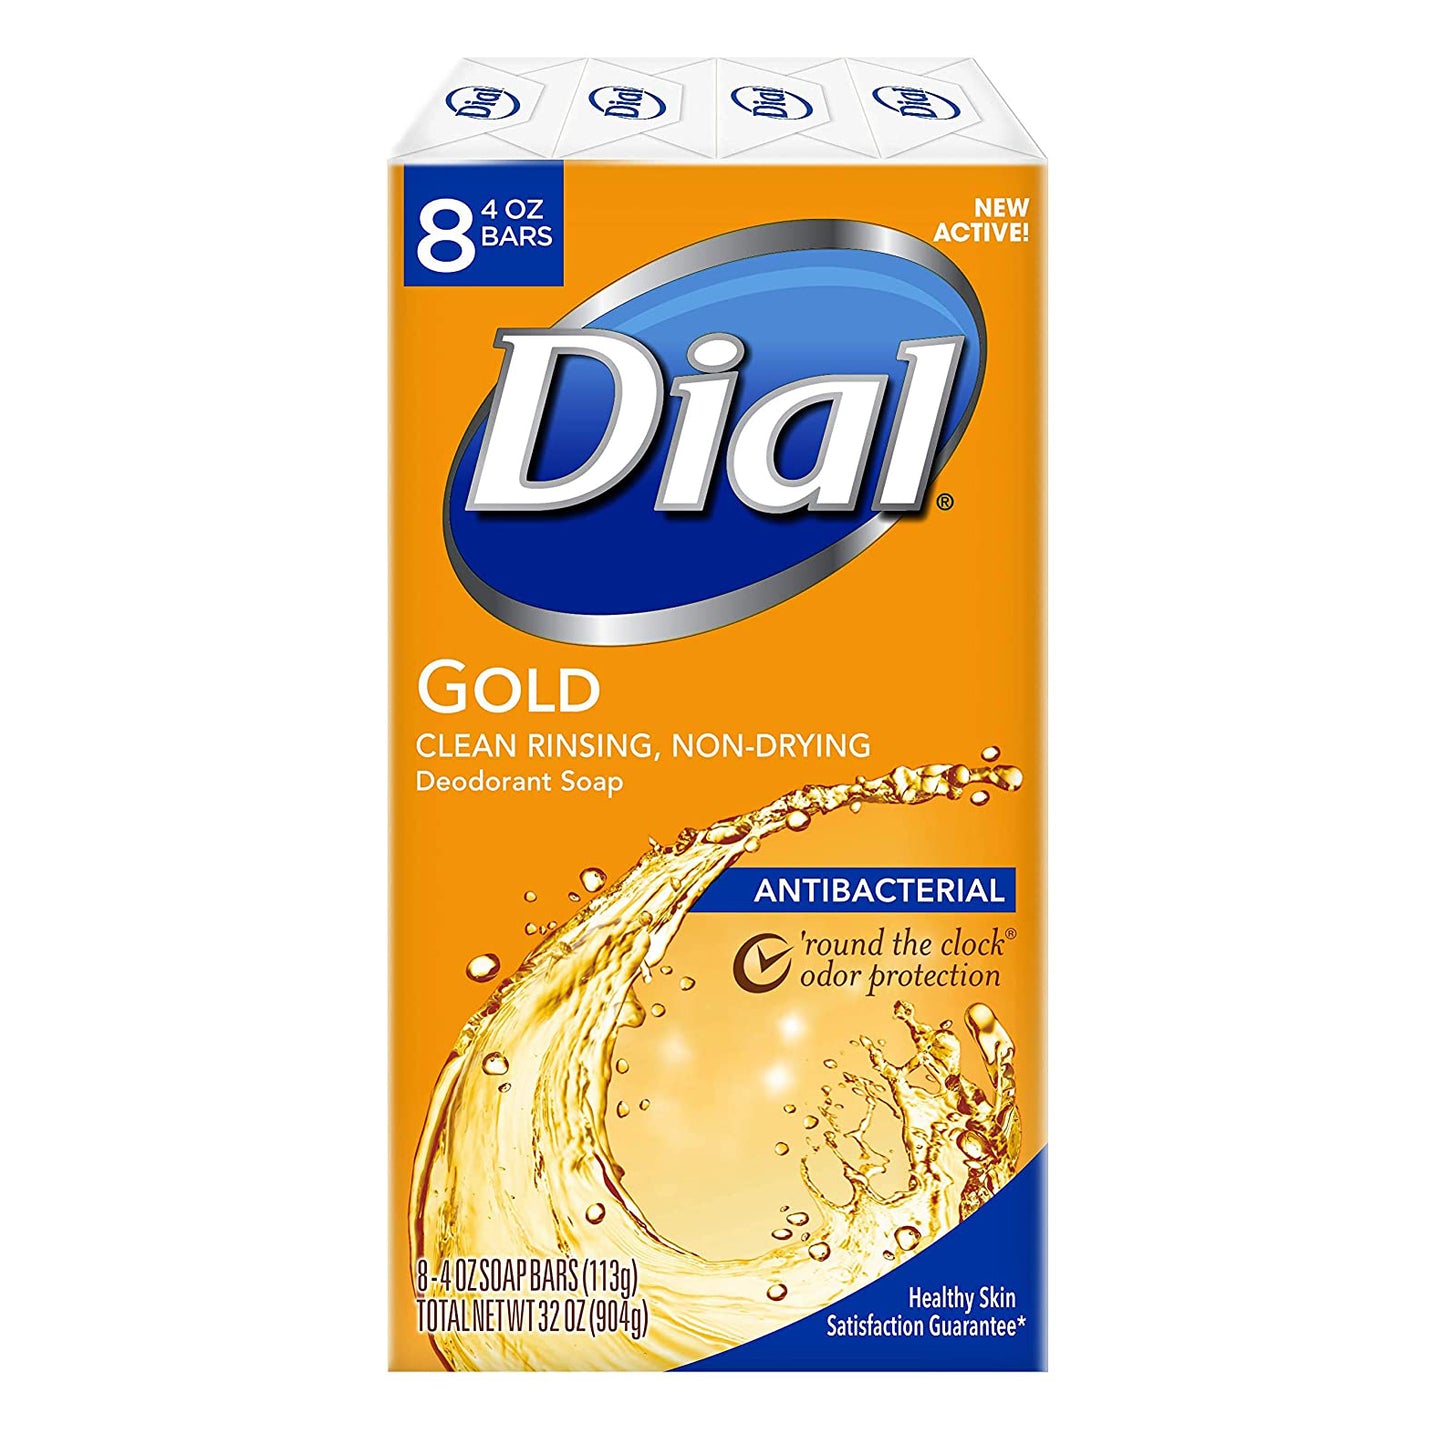 Dial Gold AntiBacterial Soap Bars - 4oz/22pk